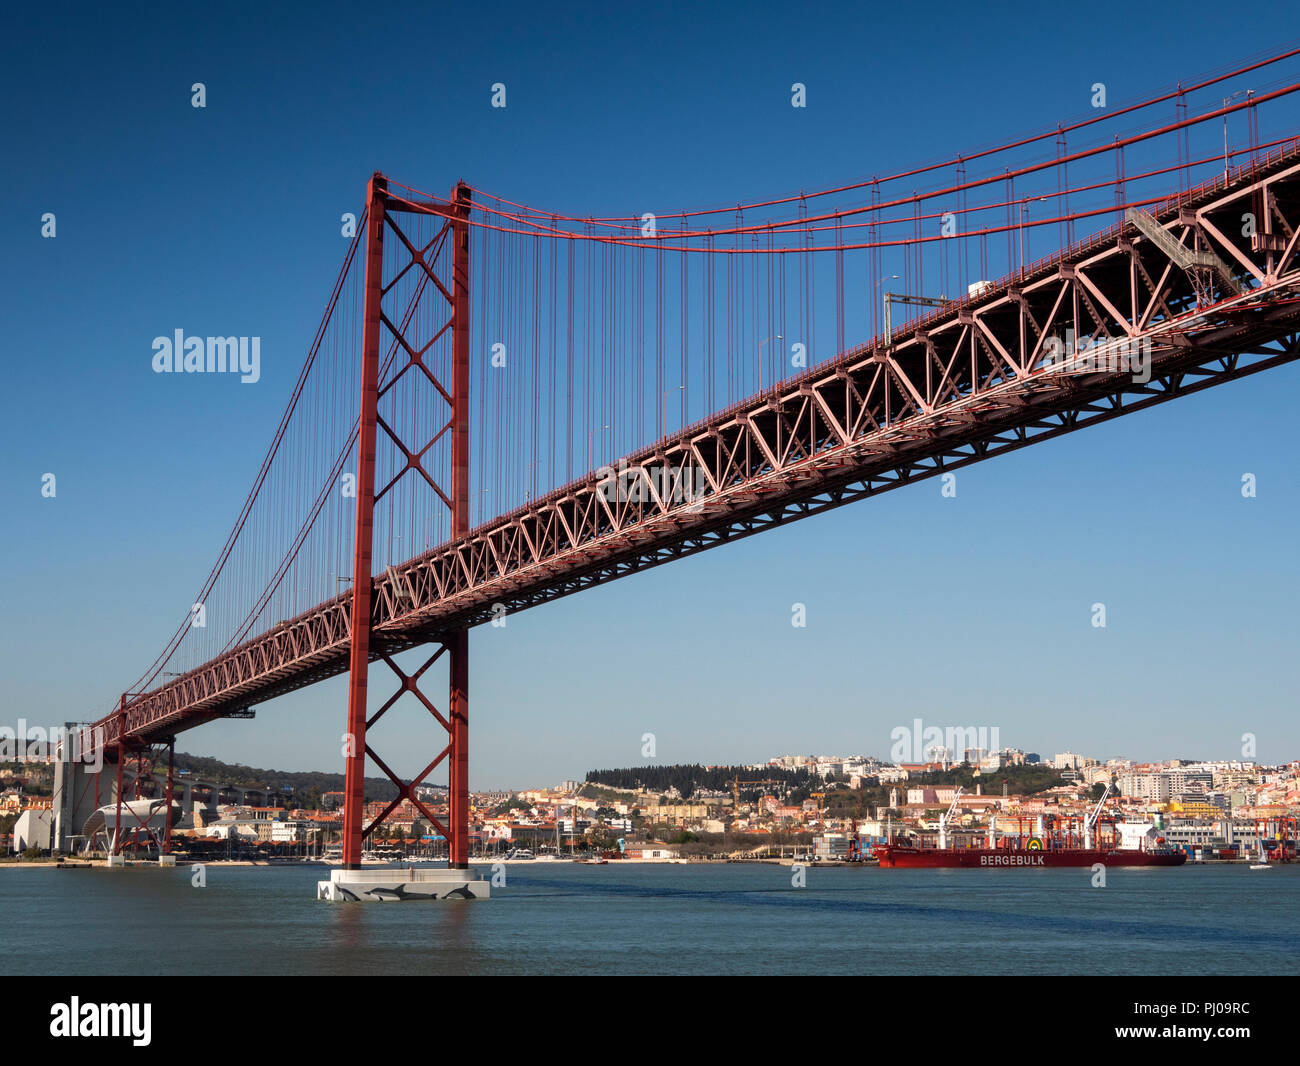 Portugal, Lisbonne, Ponte 25 de Abril, 25 avril (Pont) sur le fleuve Tage, vue panoramique Banque D'Images